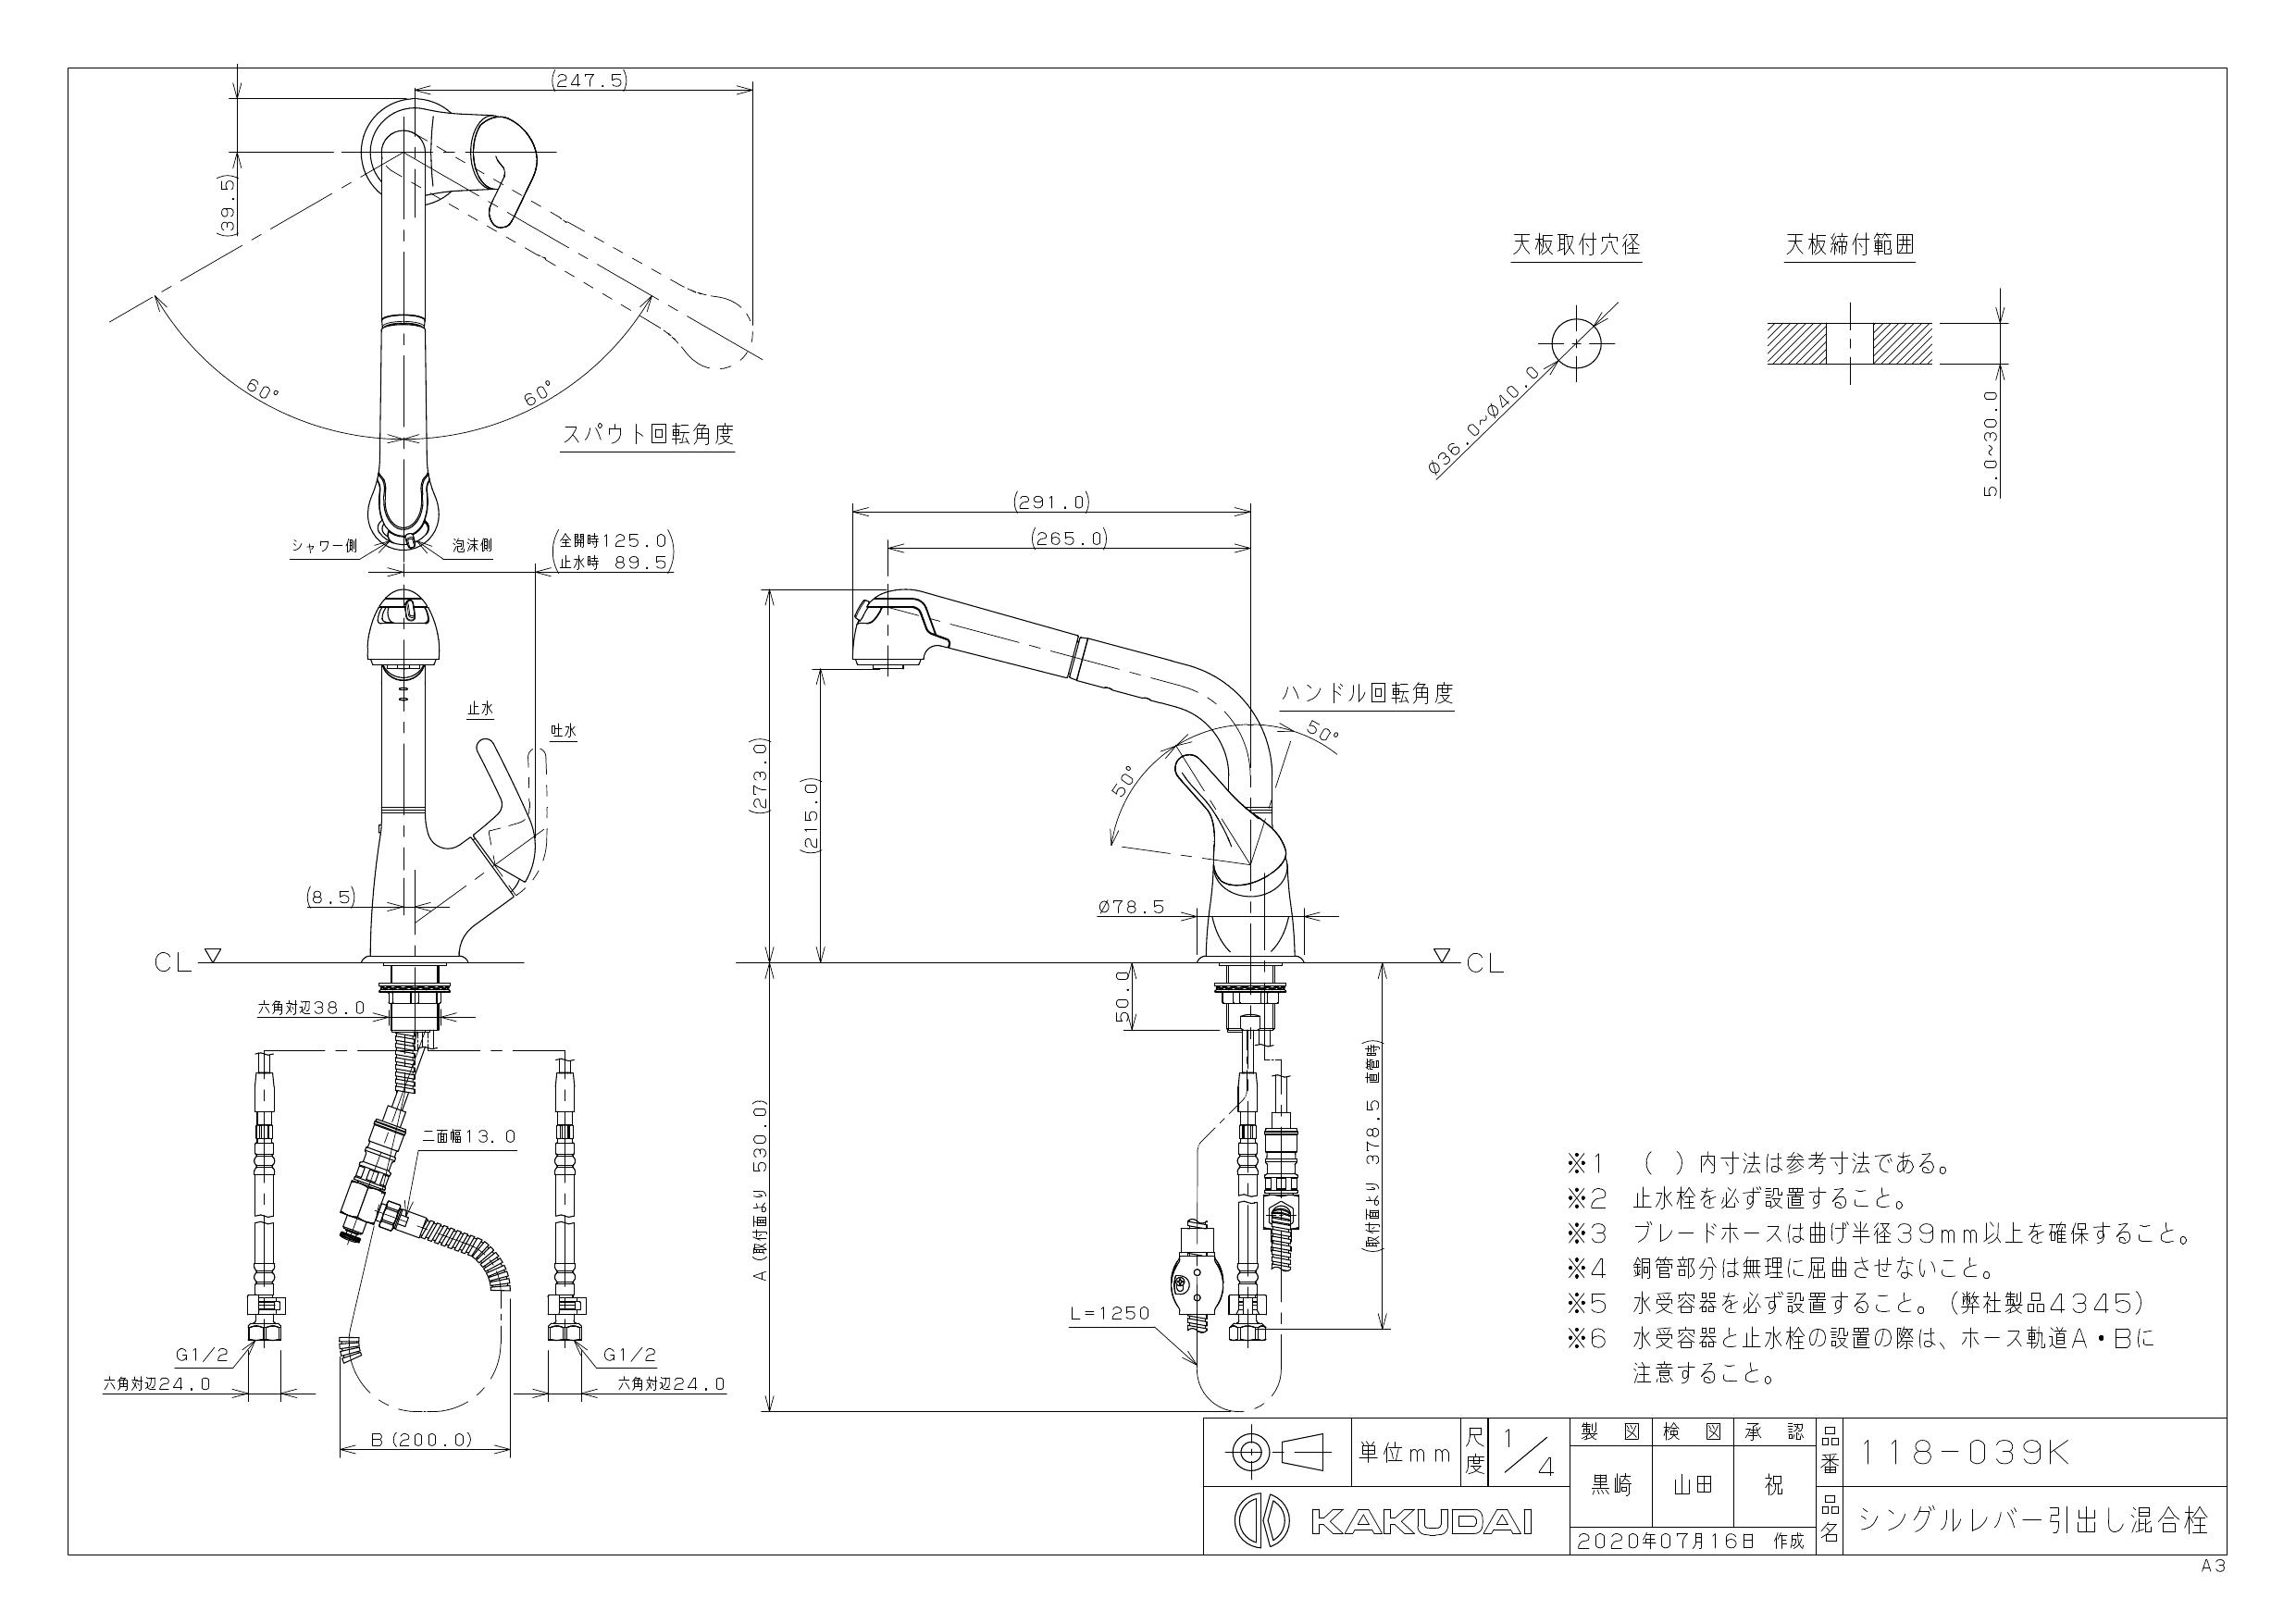 カクダイ 118-039 シングルレバー引出し混合栓 混合水栓 最適な価格